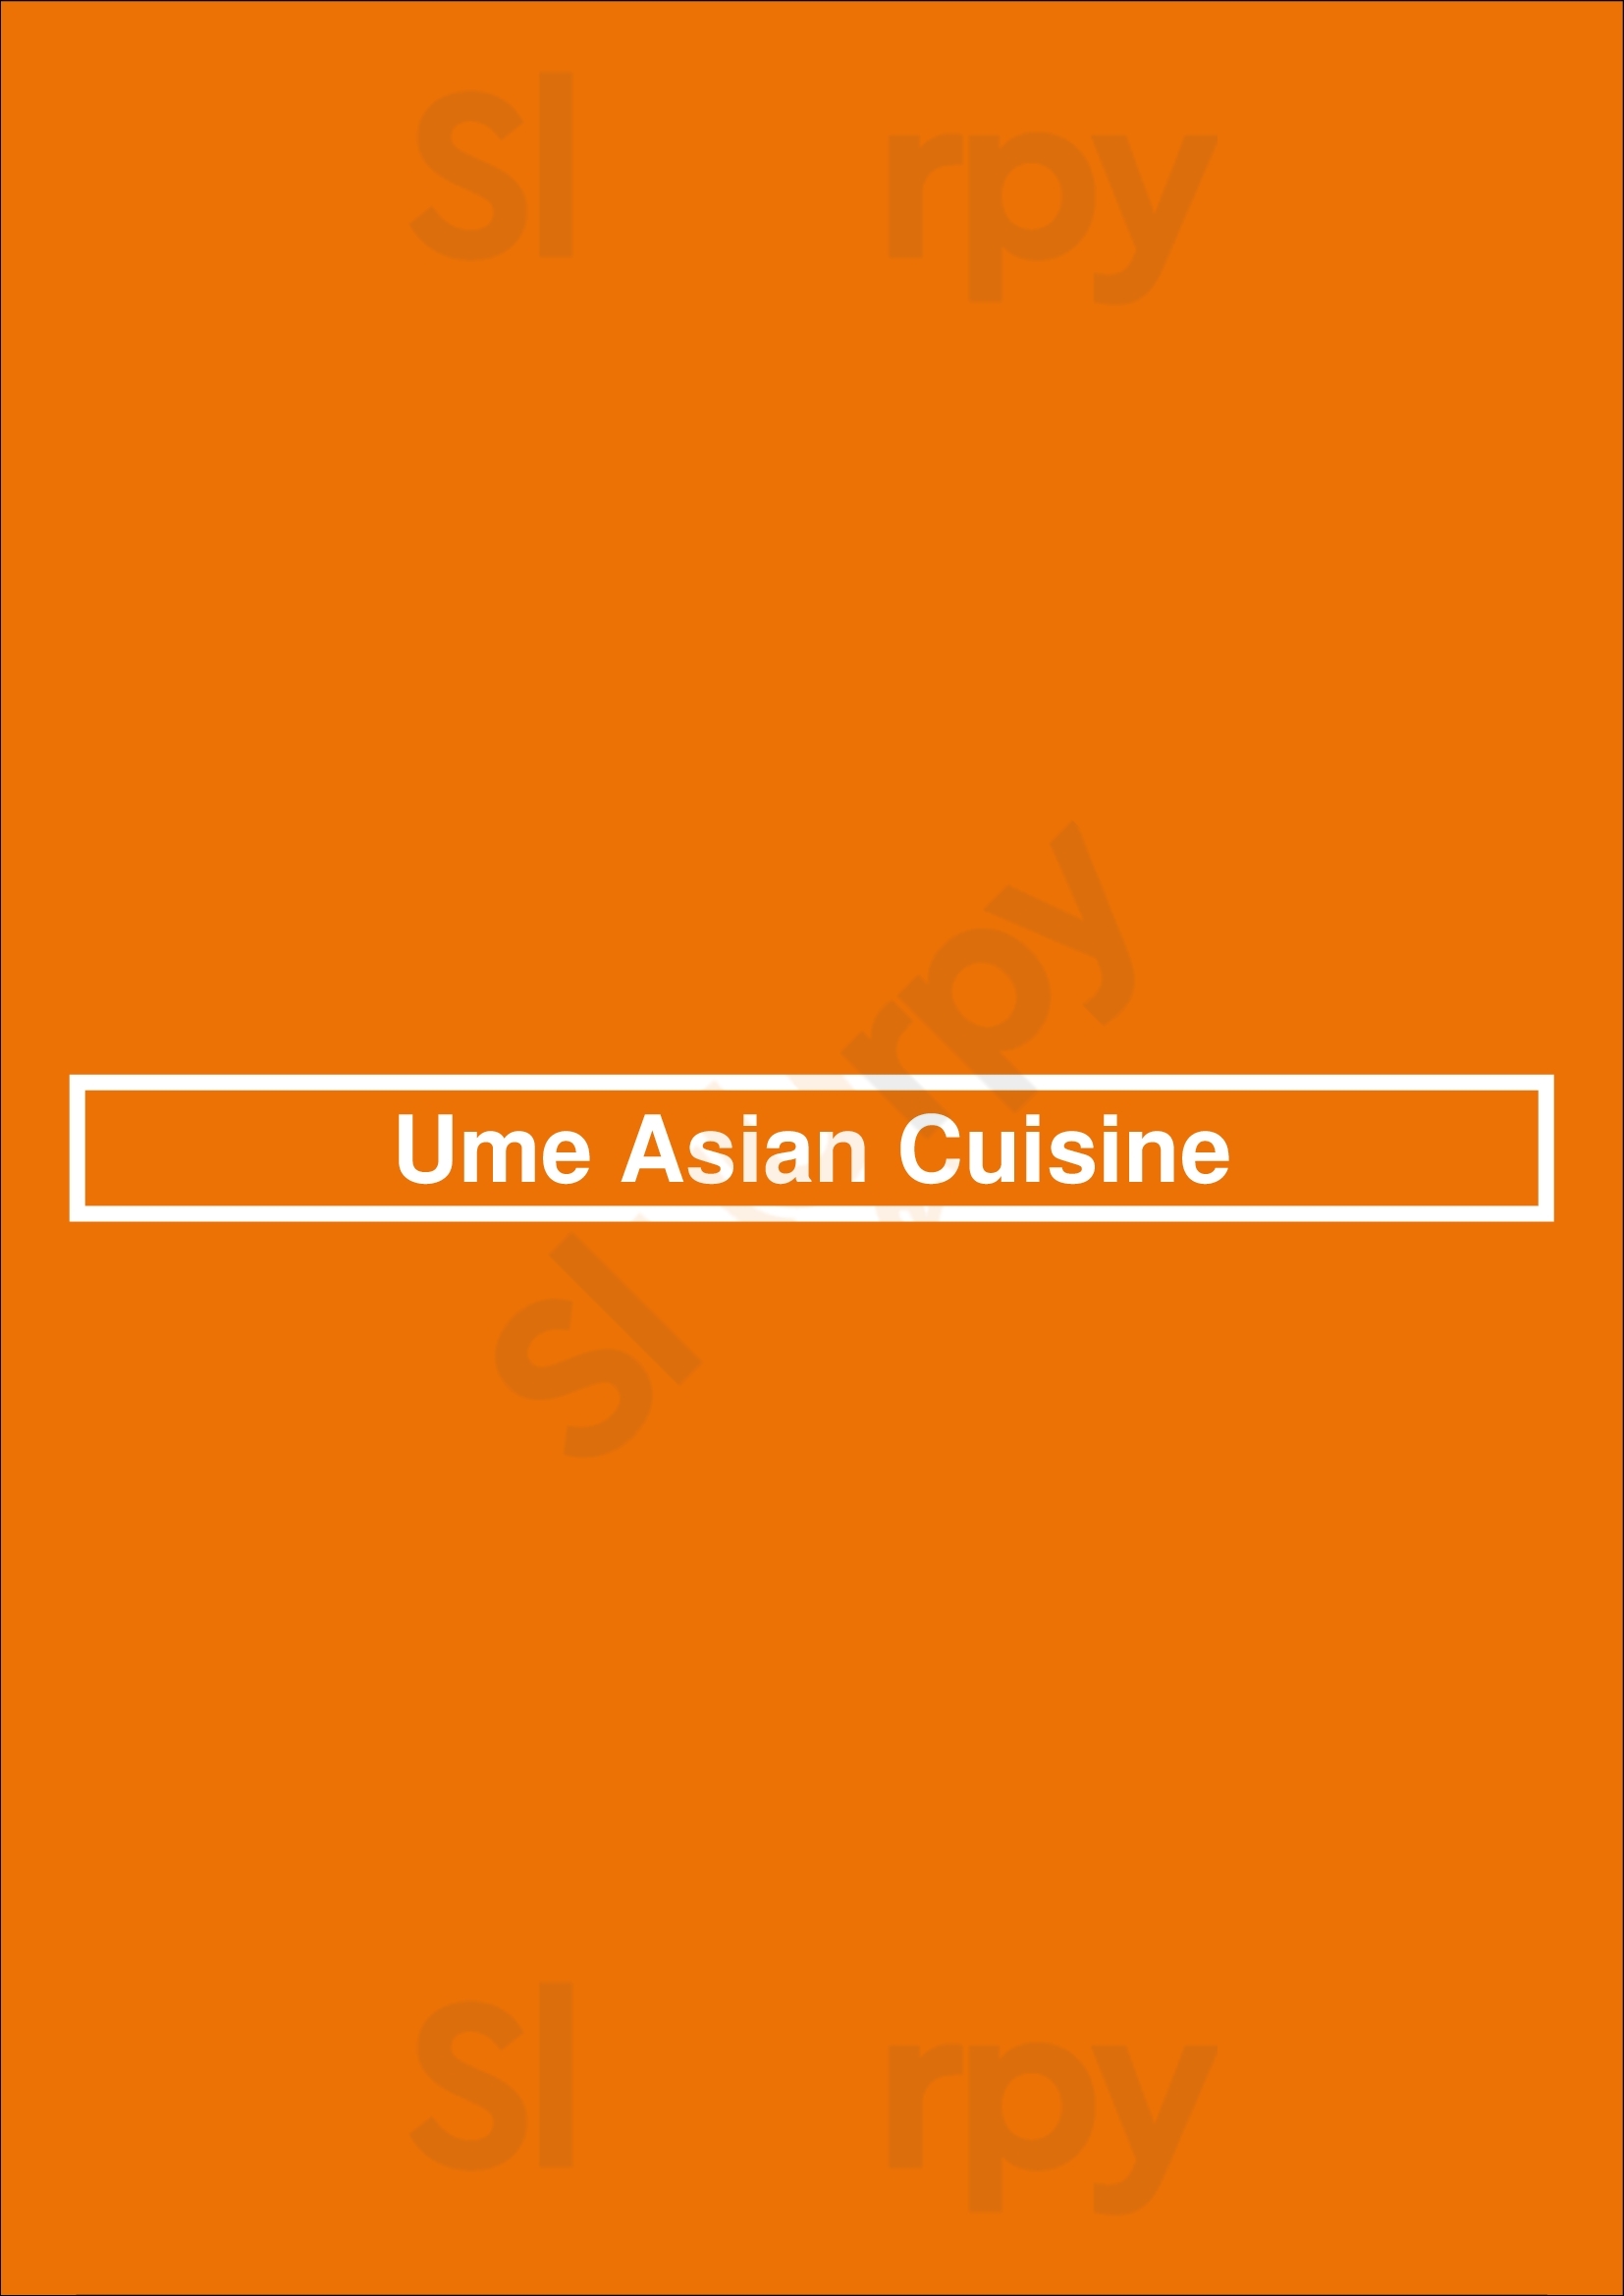 Ume Asian Cuisine Tucson Menu - 1